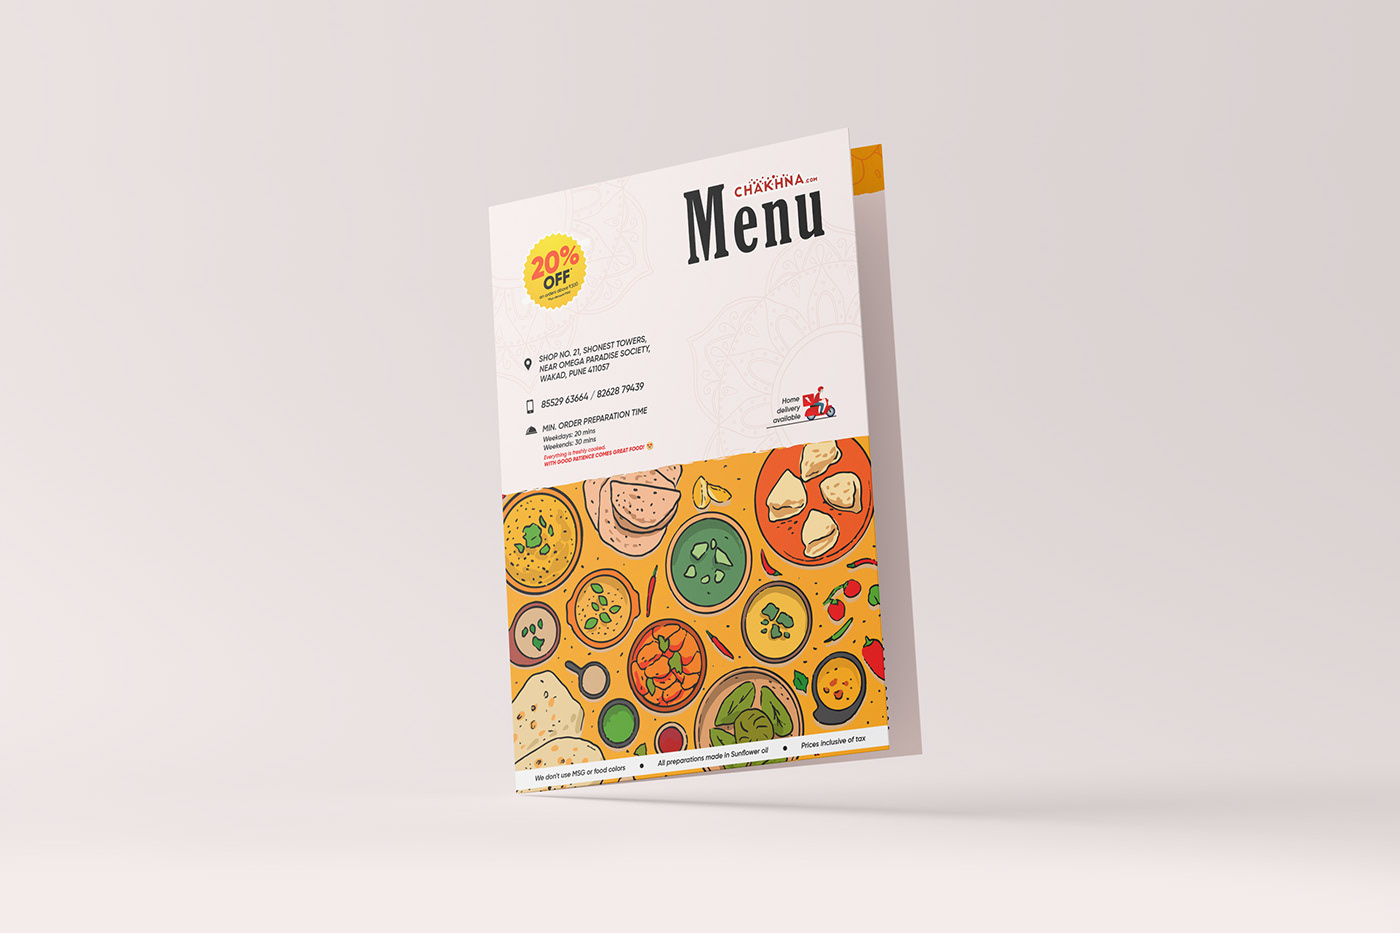 Advertising  cafe digital design flyer Food  graphic design  marketing   menu design print design  restuarant